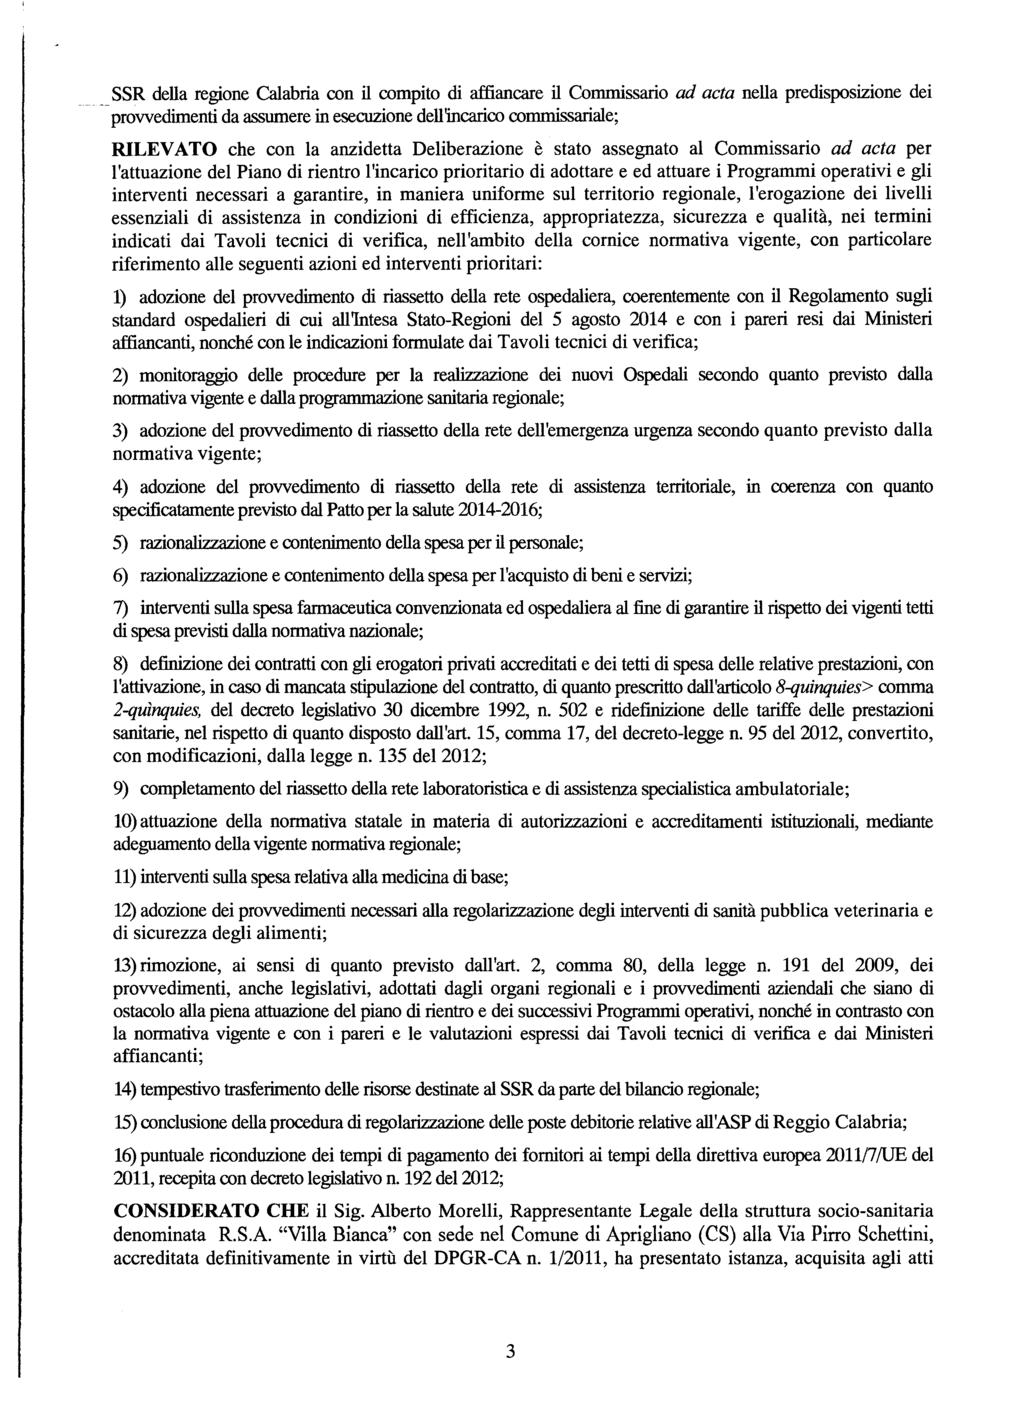 SSR della regione Calabria con il compito di affiancare il Commissario ad acta nella predisposizione dei provvedimenti da assumere in esecuzione dell'incarico commissariale; RILEVATO che con la